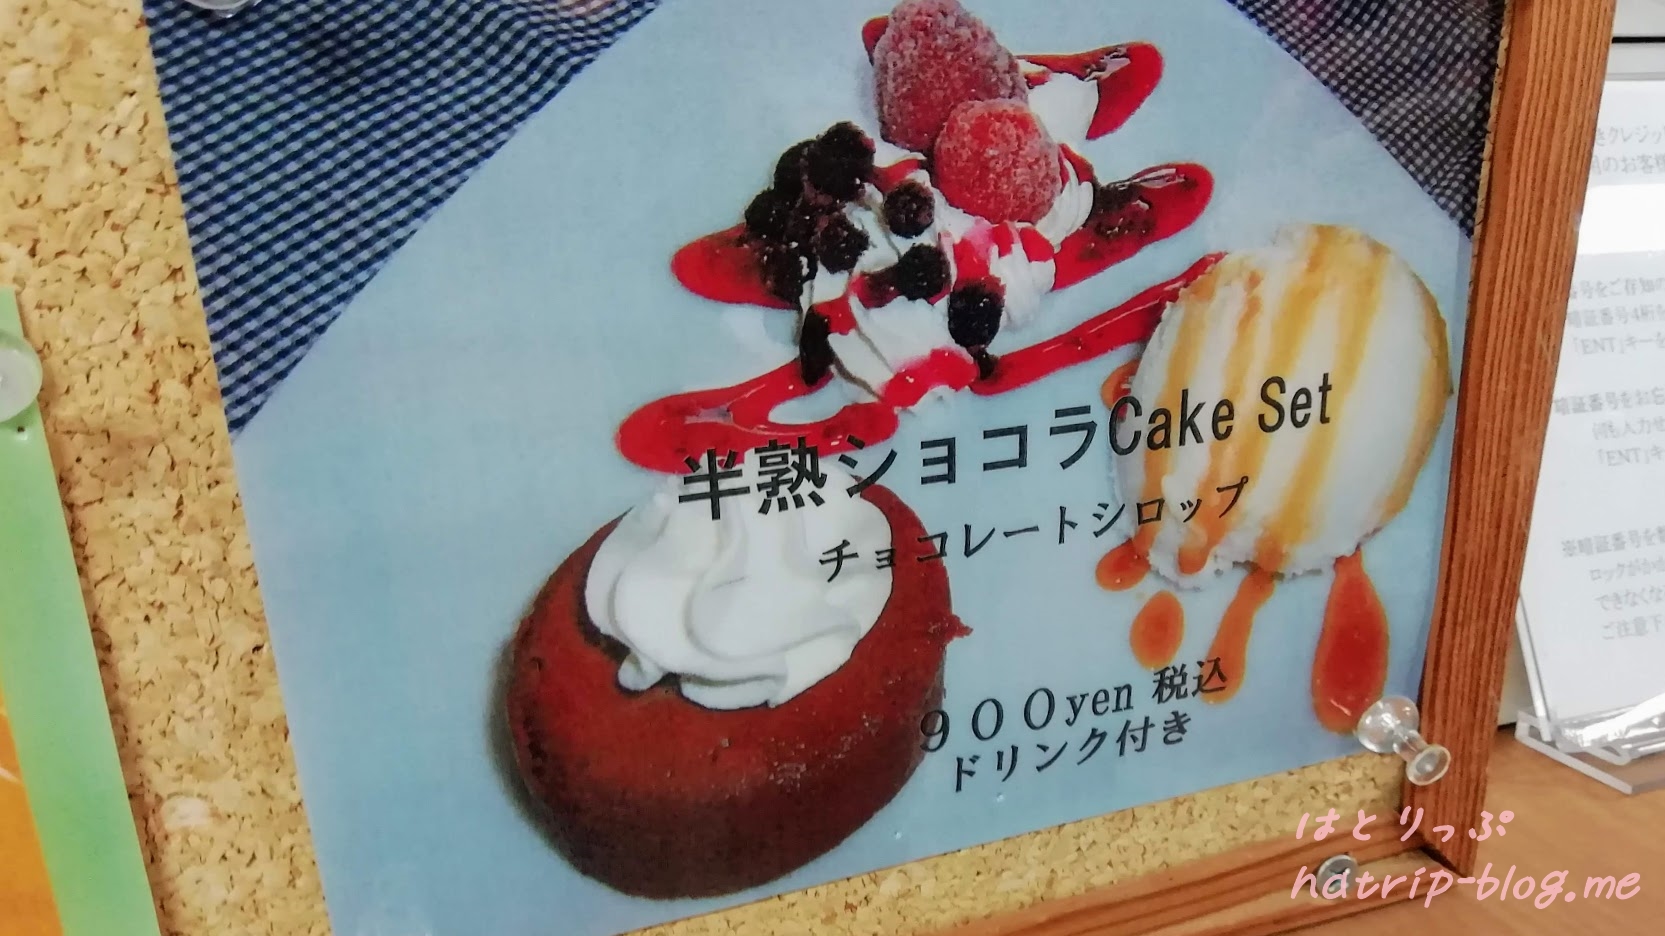 星野リゾート リゾナーレ八ヶ岳 ファーマーズケーキ 半熟ショコラケーキセット